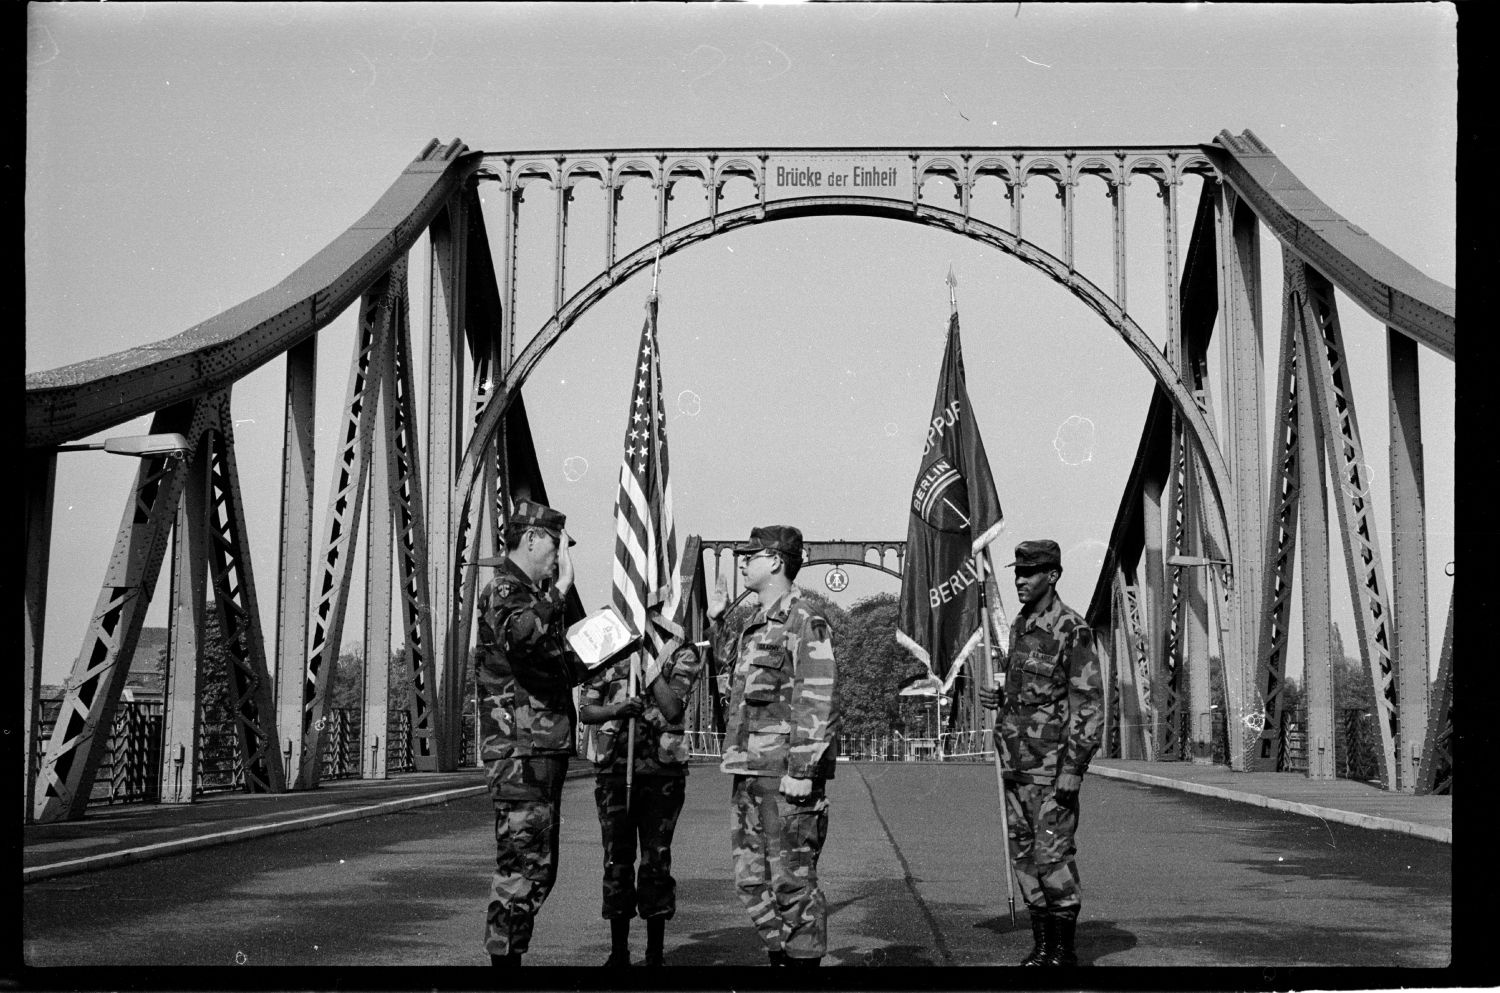 s/w-Fotografie: Militärische Zeremonie der U.S. Army Berlin Brigade auf der Glienicker Brücke zwischen West-Berlin und Potsdam (AlliiertenMuseum/U.S. Army Photograph Public Domain Mark)